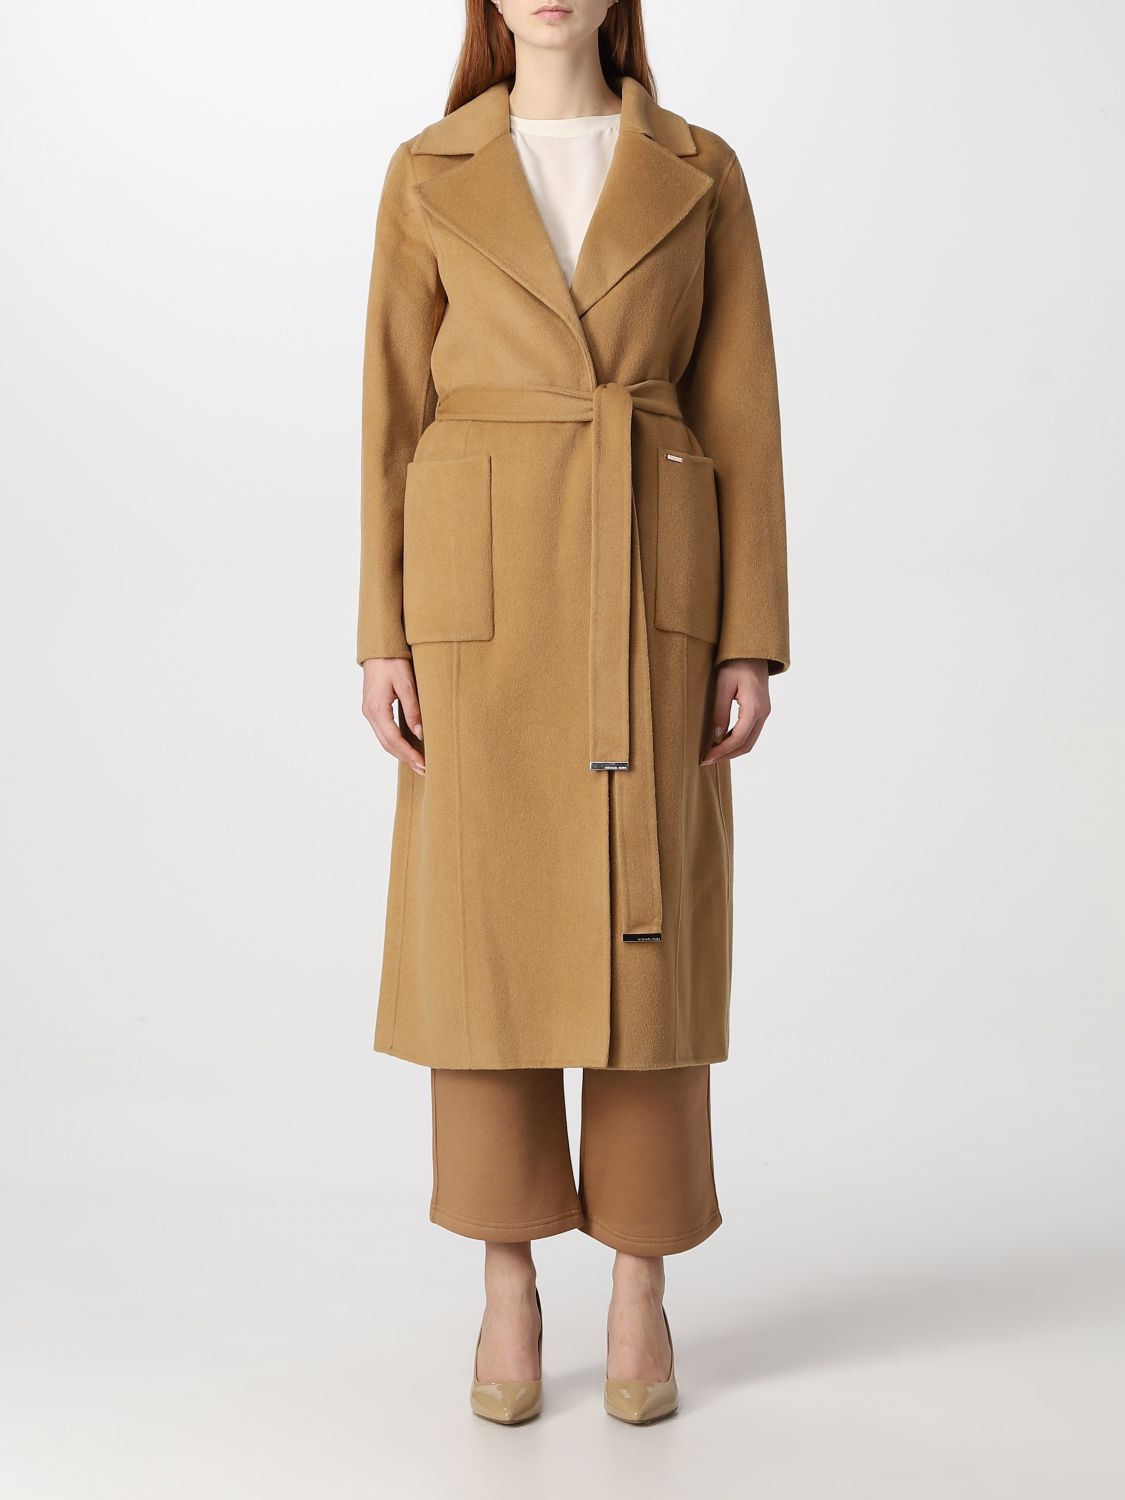 MICHAEL KORS: coat for woman - Camel | Michael Kors coat 77Q5935M22 ...